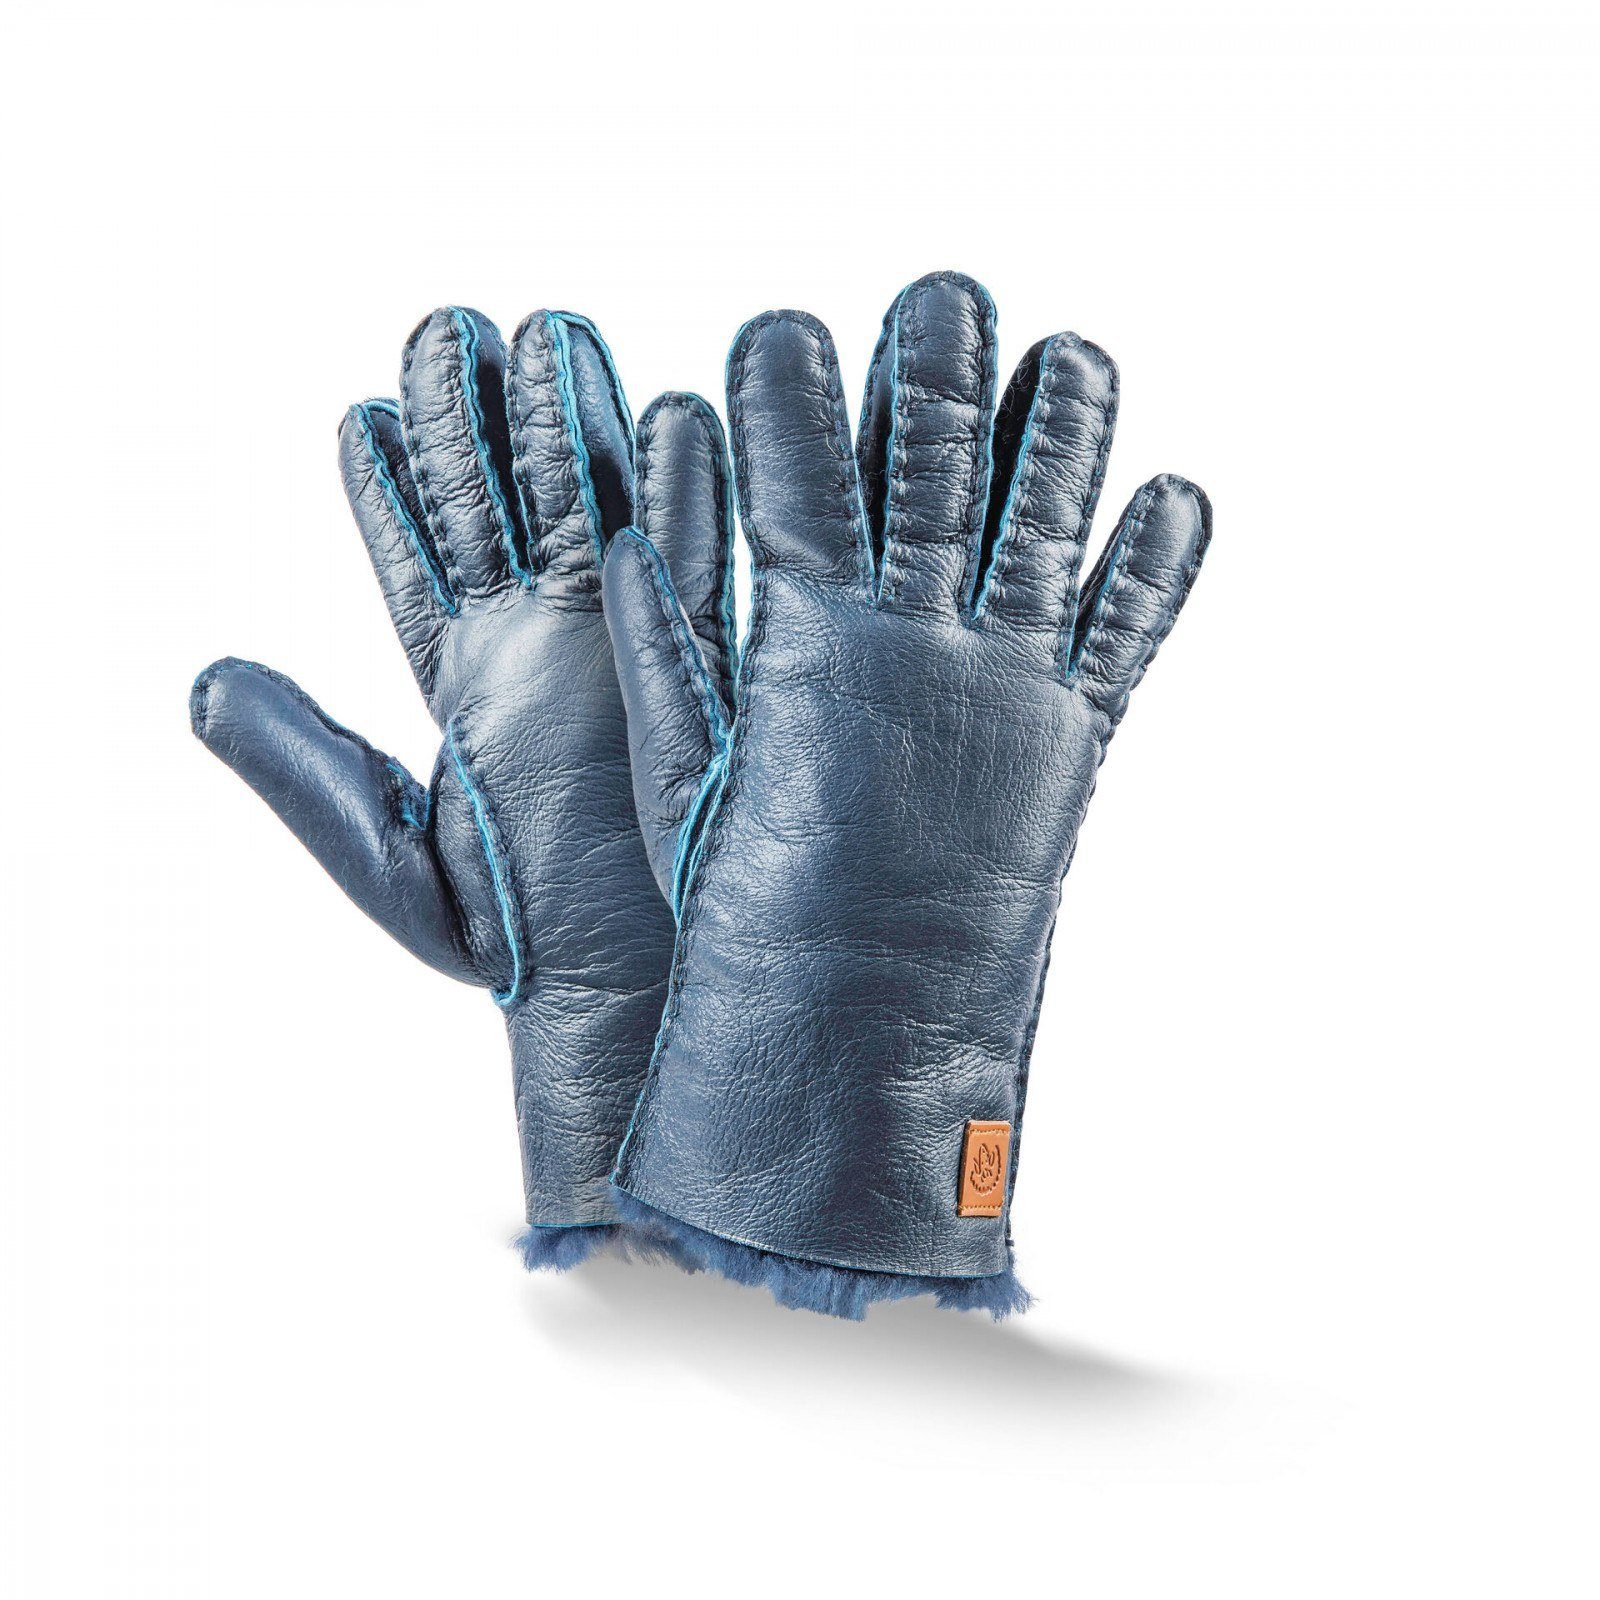 Kinder-Handschuhe Leder-Handschuh Fellhof 4-5,5 Lederhandschuhe Kids Lammfell Trend blau